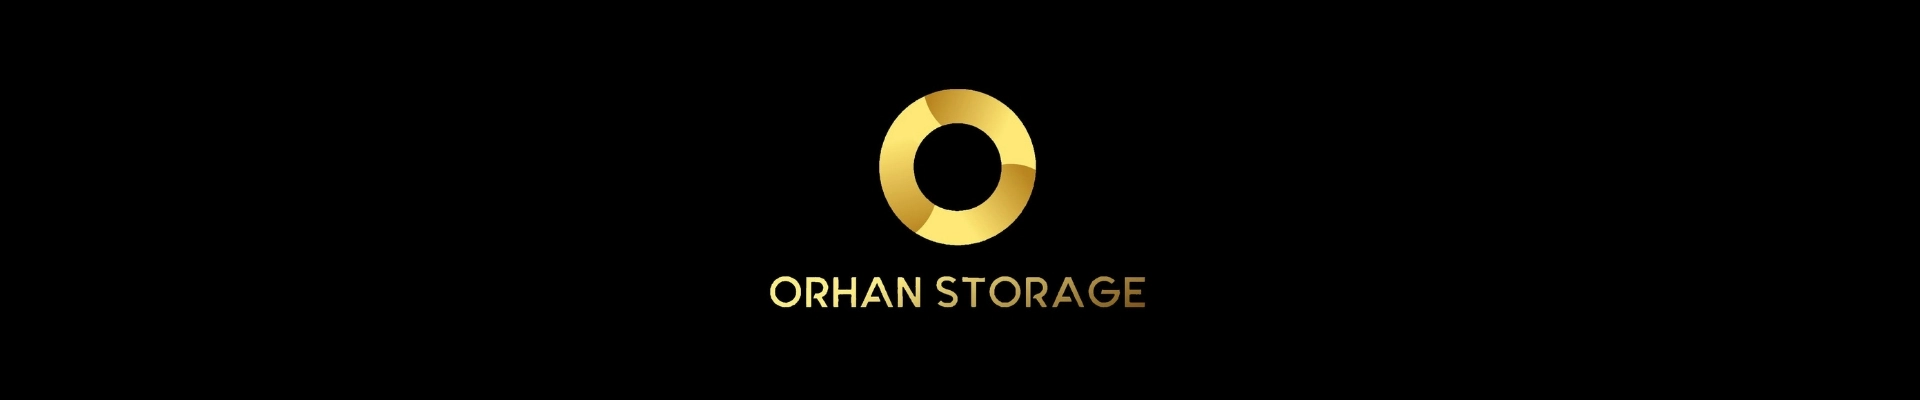 ORHAN  STORAGE kapak fotoğrafı